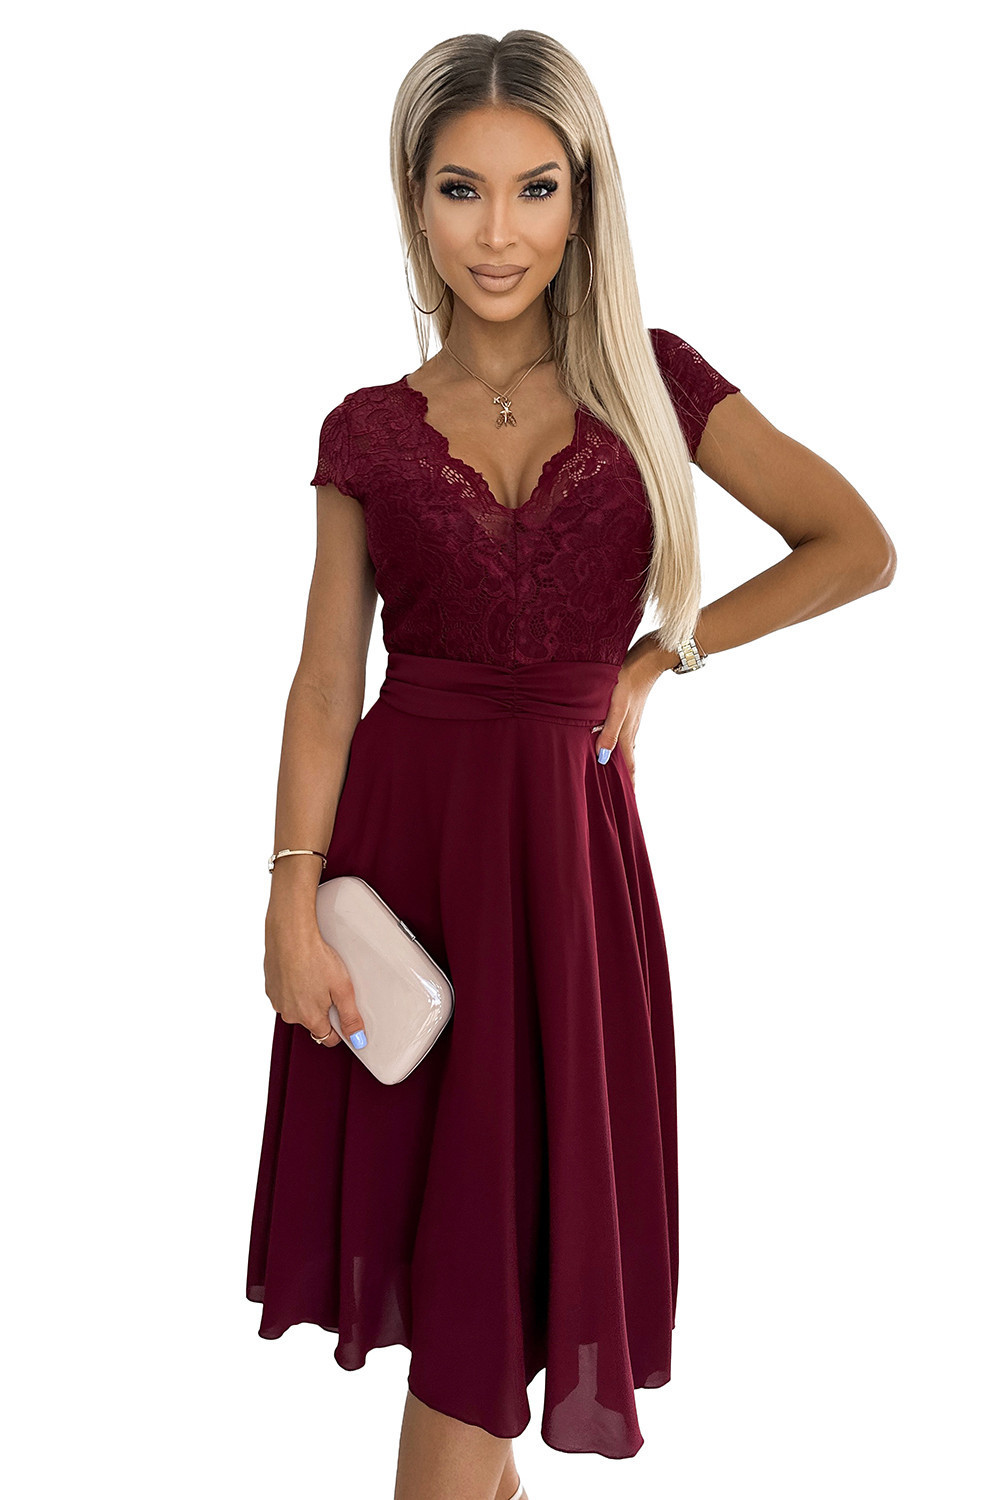 LINDA - Dámské šifonové šaty ve vínové bordó barvě s krajkovým výstřihem 381-5 XL